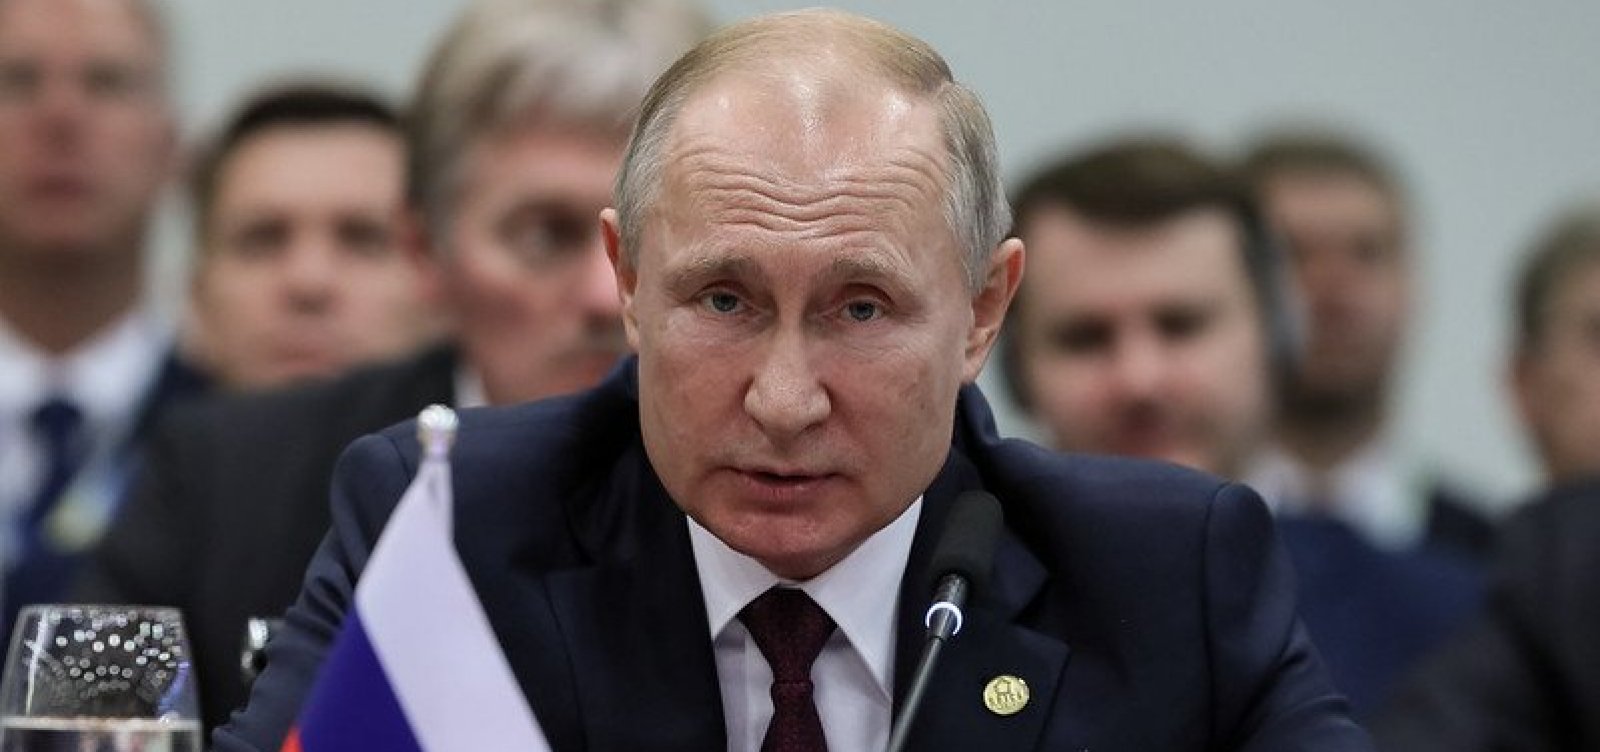 Putin deseja um "feriado maravilhoso" após avião em que estaria líder do Grupo Wagner cair 